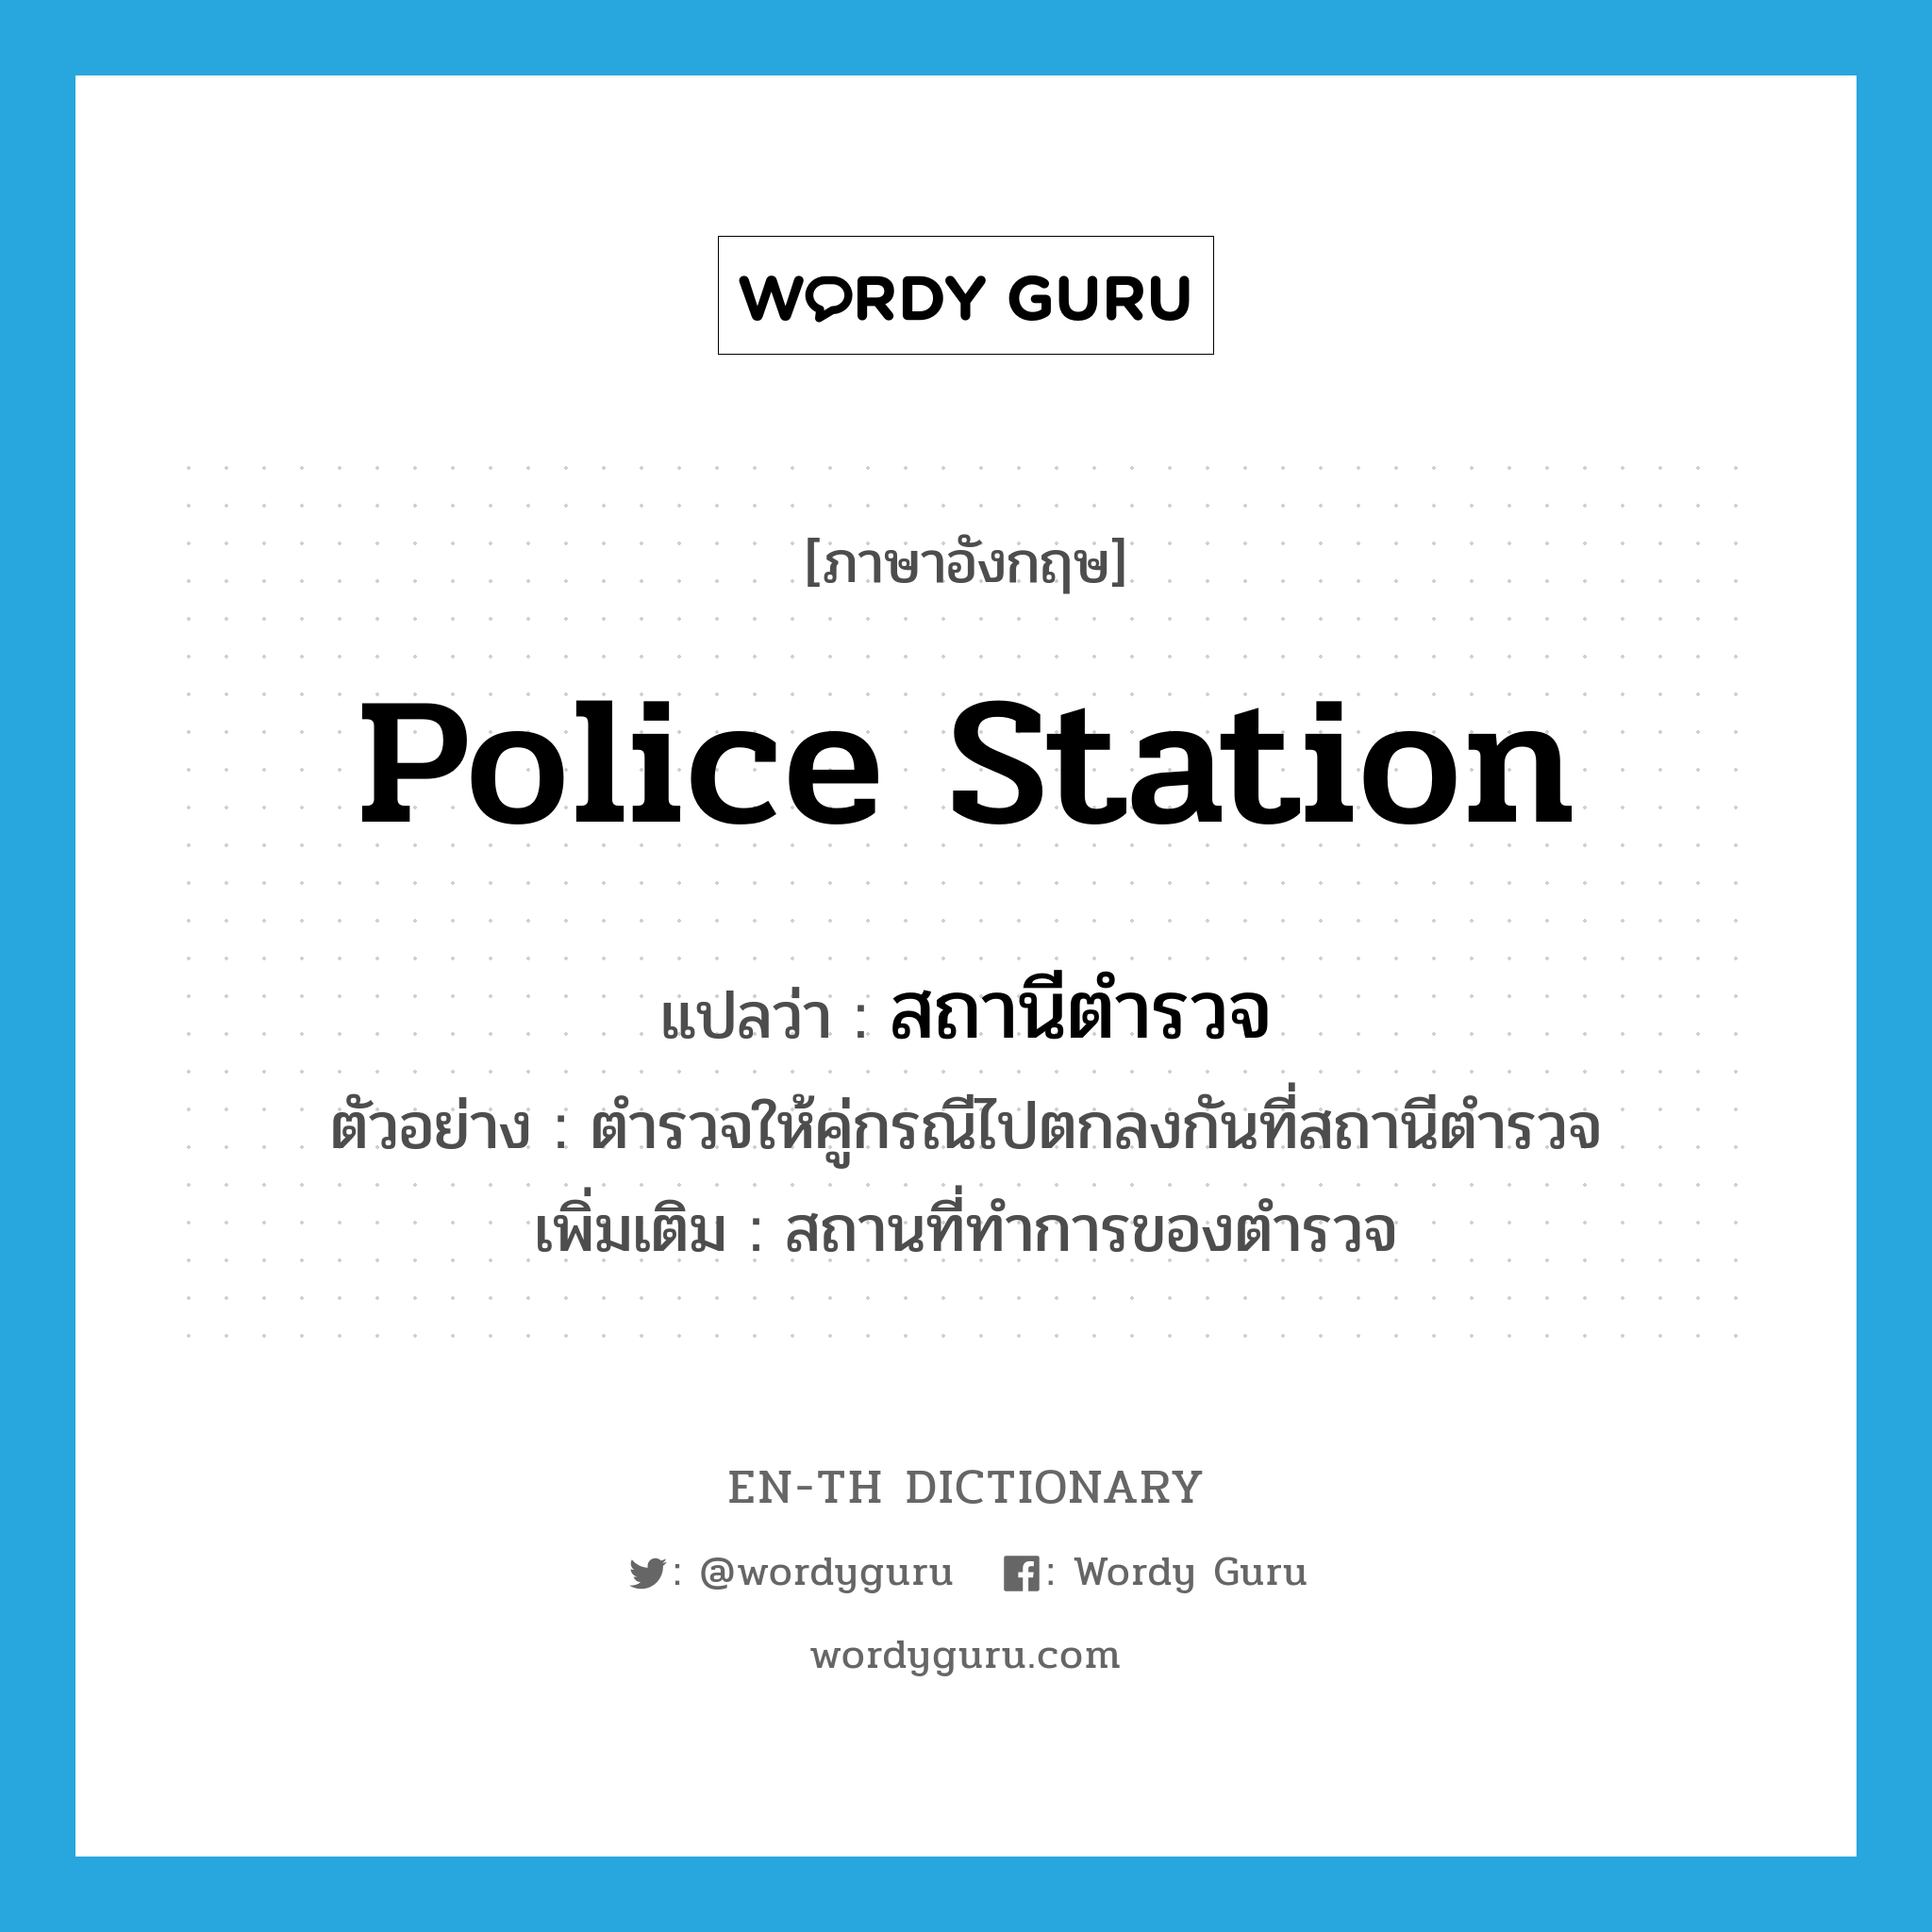 สถานีตำรวจ ภาษาอังกฤษ?, คำศัพท์ภาษาอังกฤษ สถานีตำรวจ แปลว่า police station ประเภท N ตัวอย่าง ตำรวจให้คู่กรณีไปตกลงกันที่สถานีตำรวจ เพิ่มเติม สถานที่ทำการของตำรวจ หมวด N